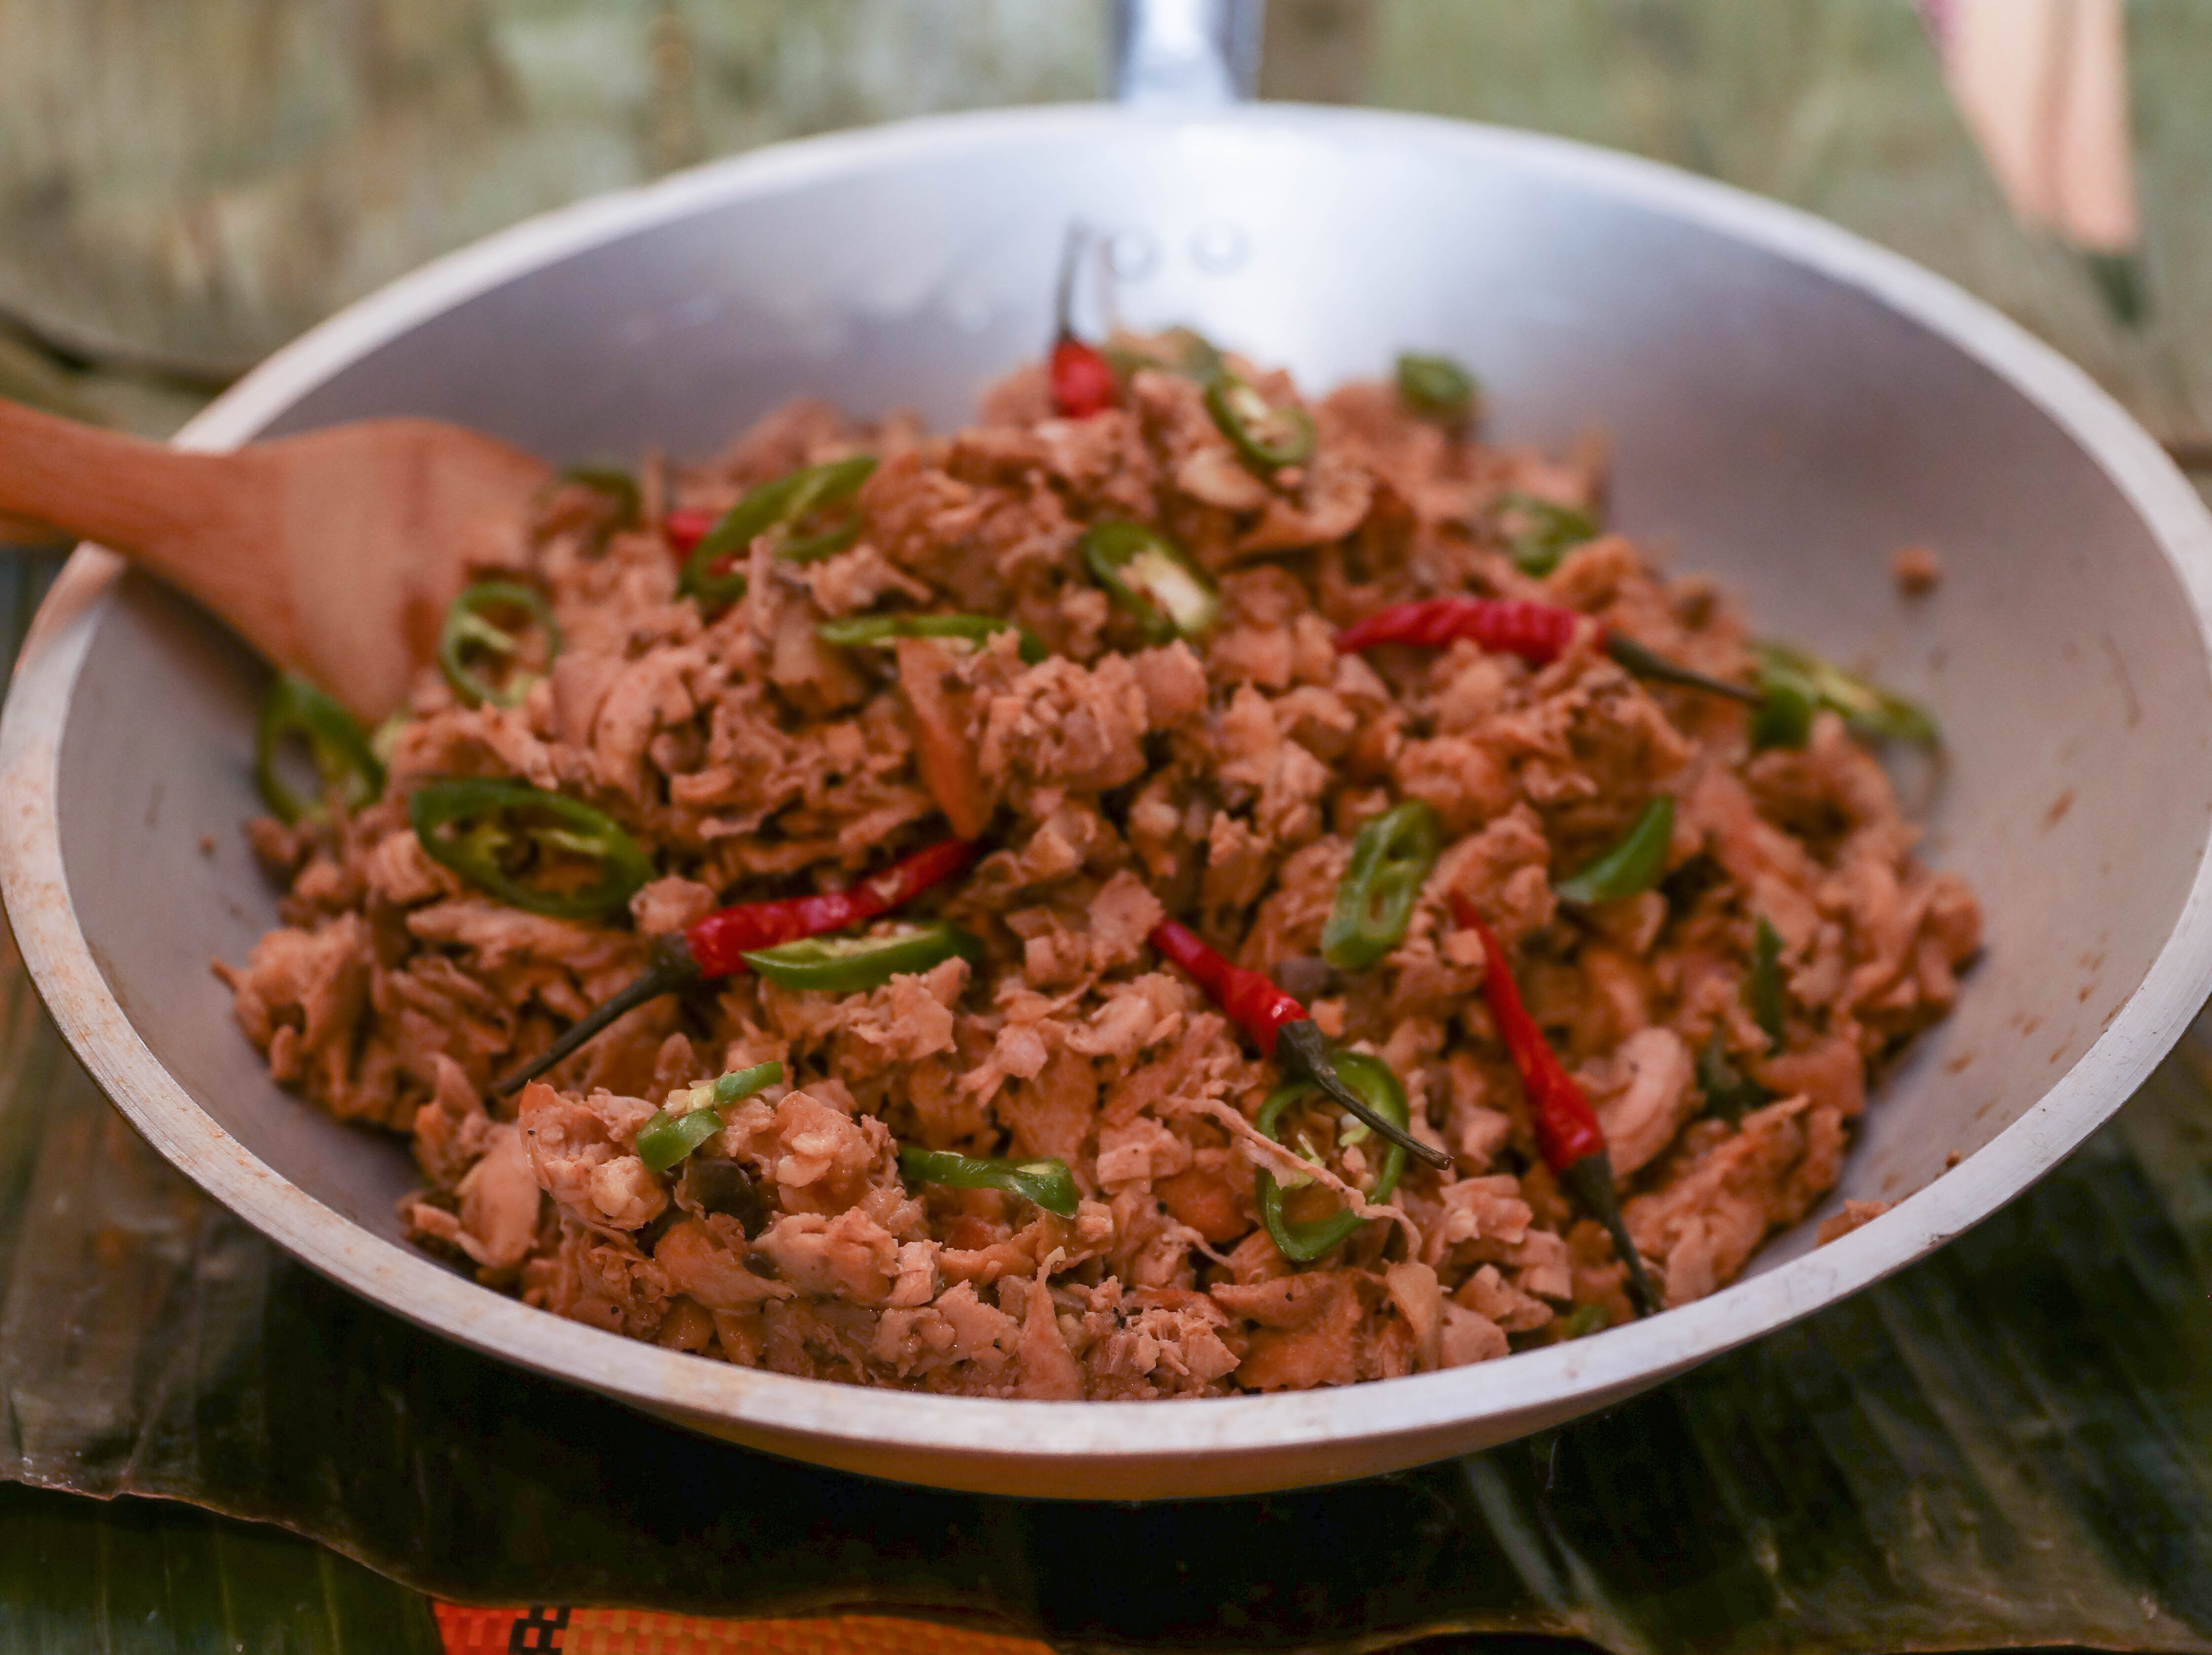 Cuisine philippine : découvrez les Philippines autrement ! Visit